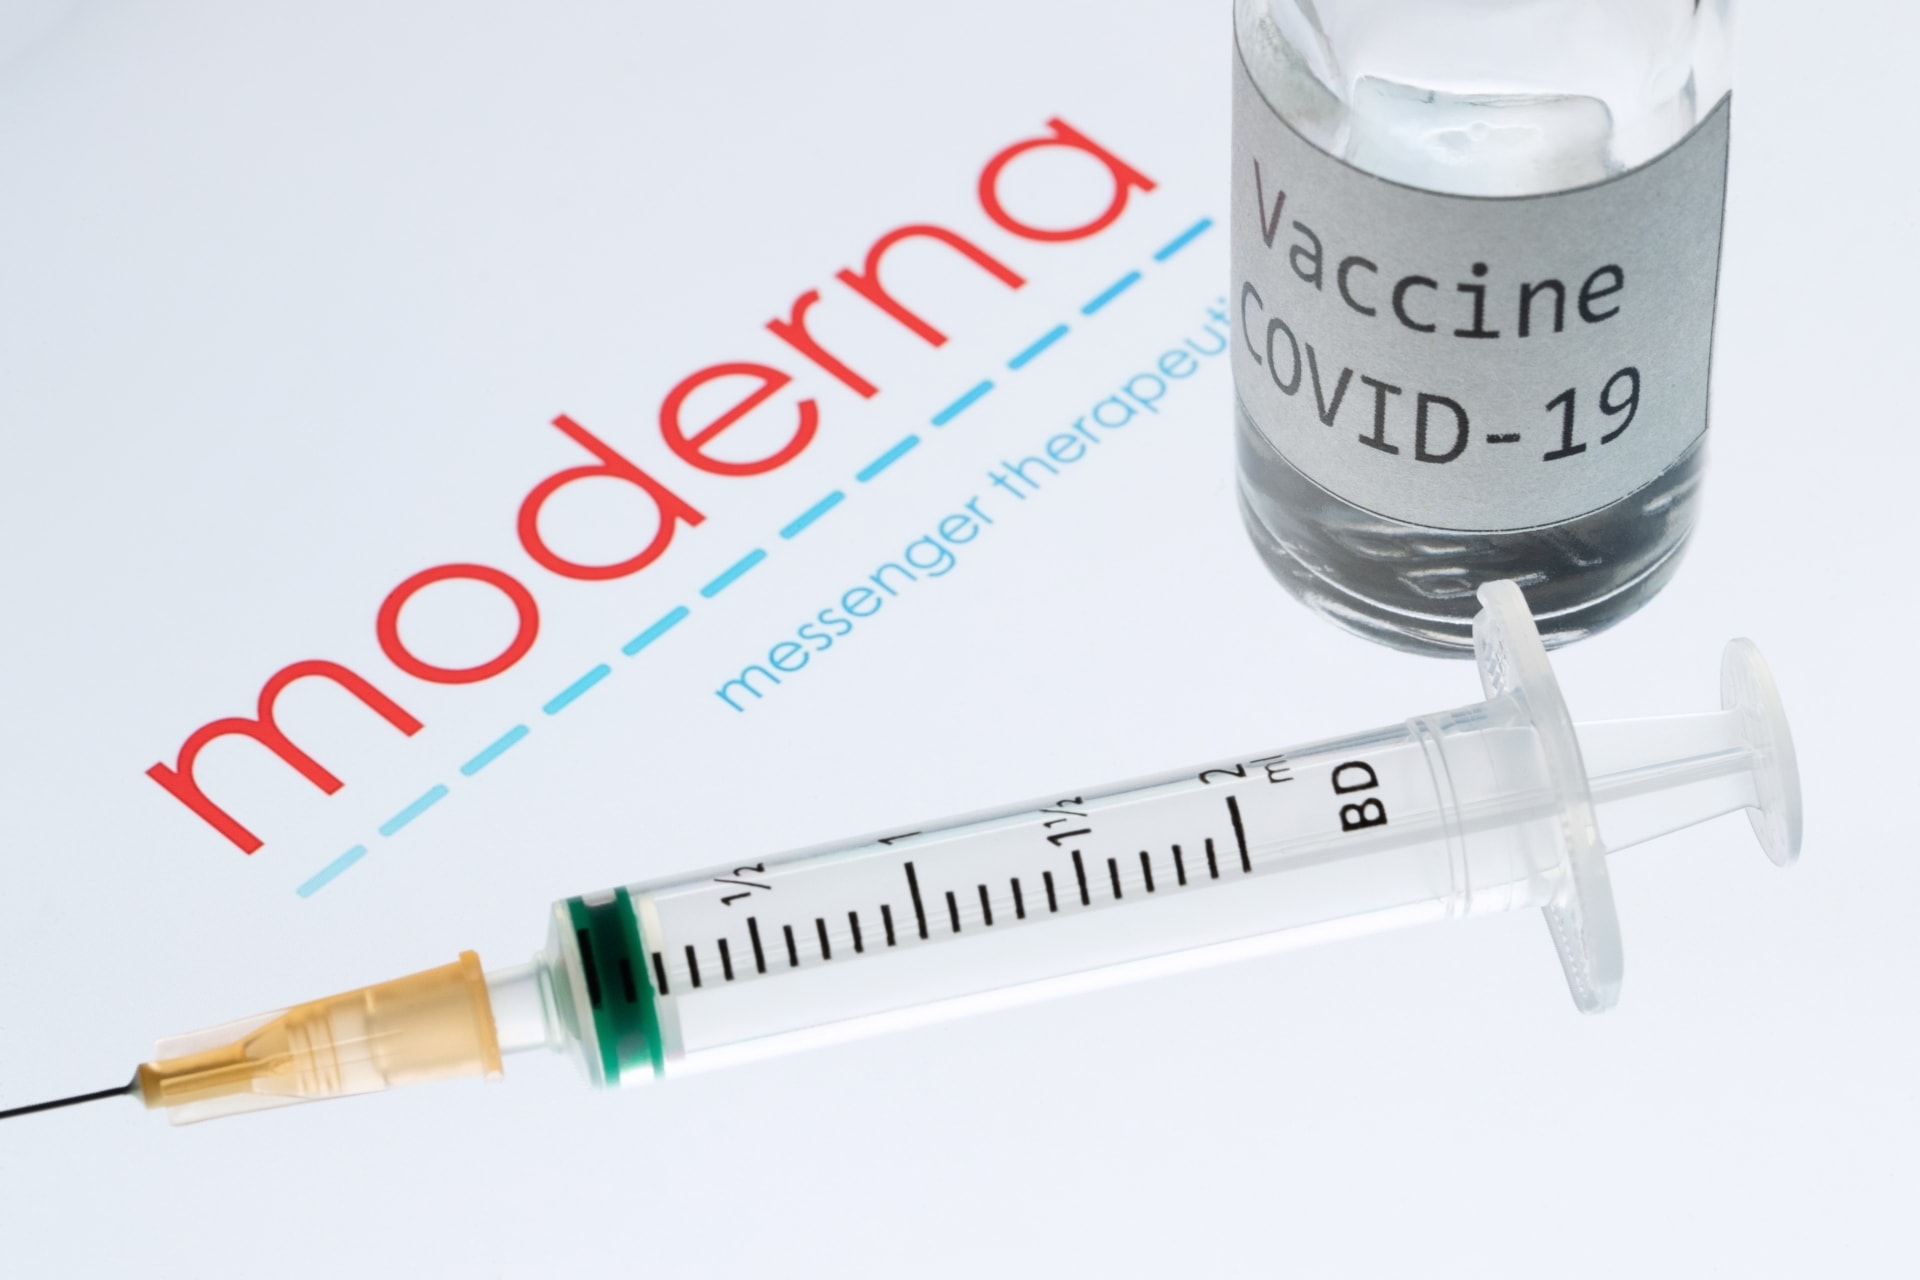 hoax - 20210210 HOAX AFP moderna758796 - HOAX: Americký vedec vo videu zavádzal o bezpečnosti vakcíny proti Covid-19